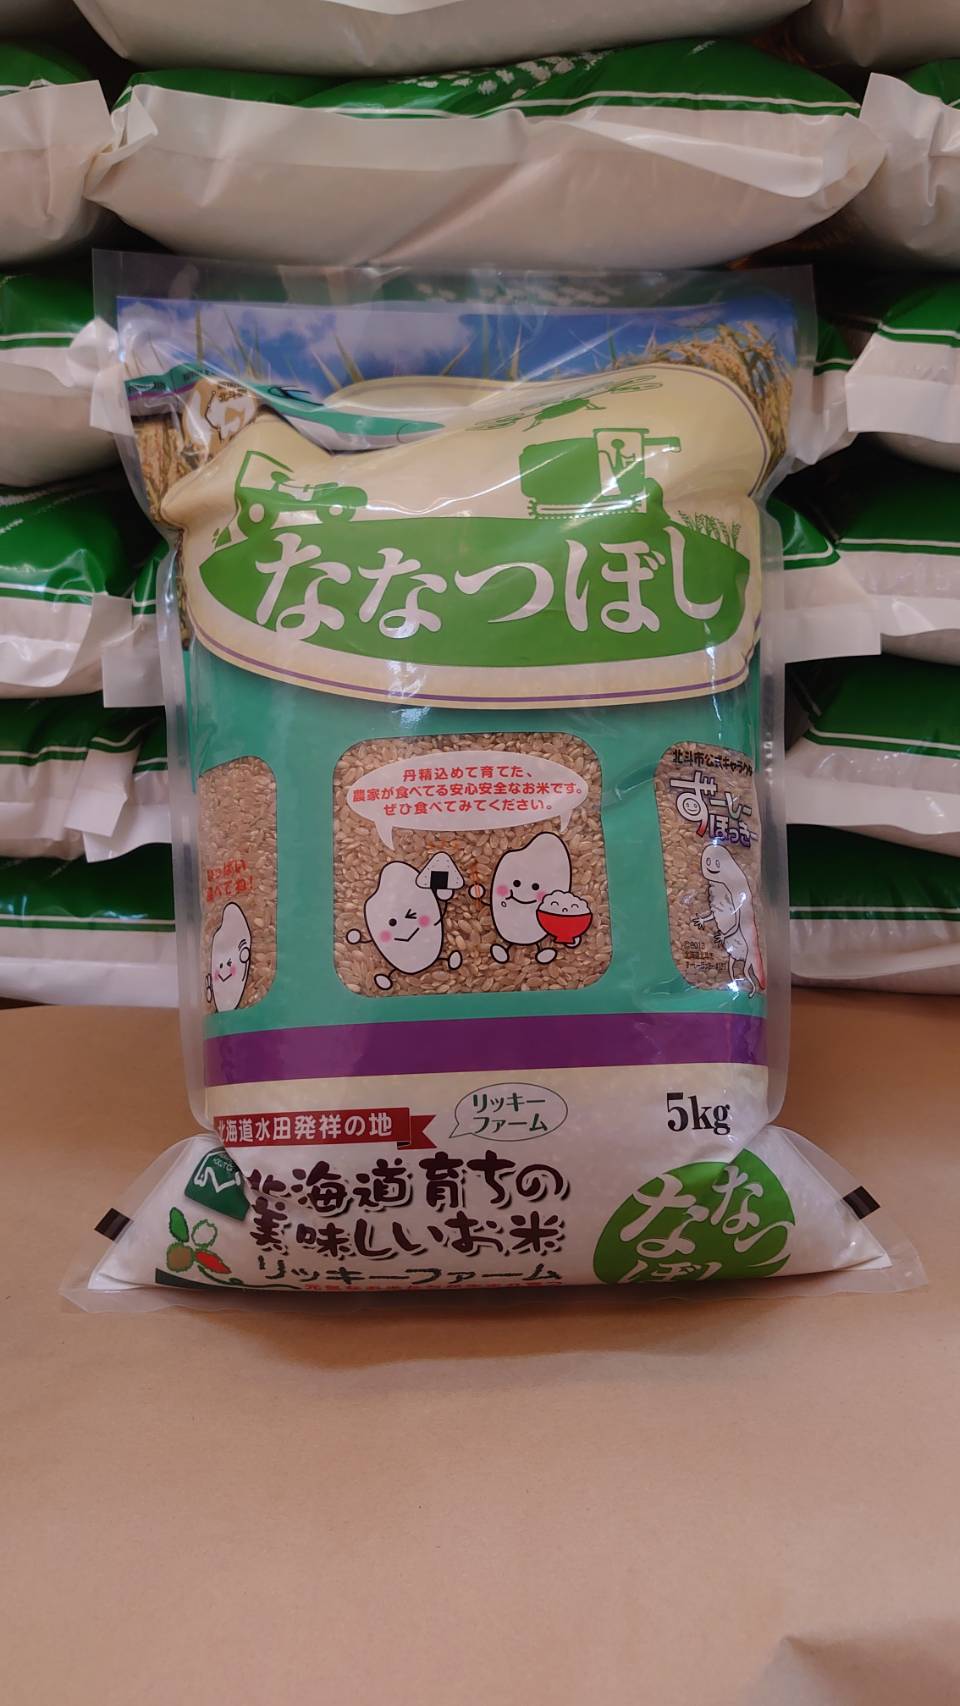 北海道産 特Aランク ななつぼし5kg【玄米】 HOKK014